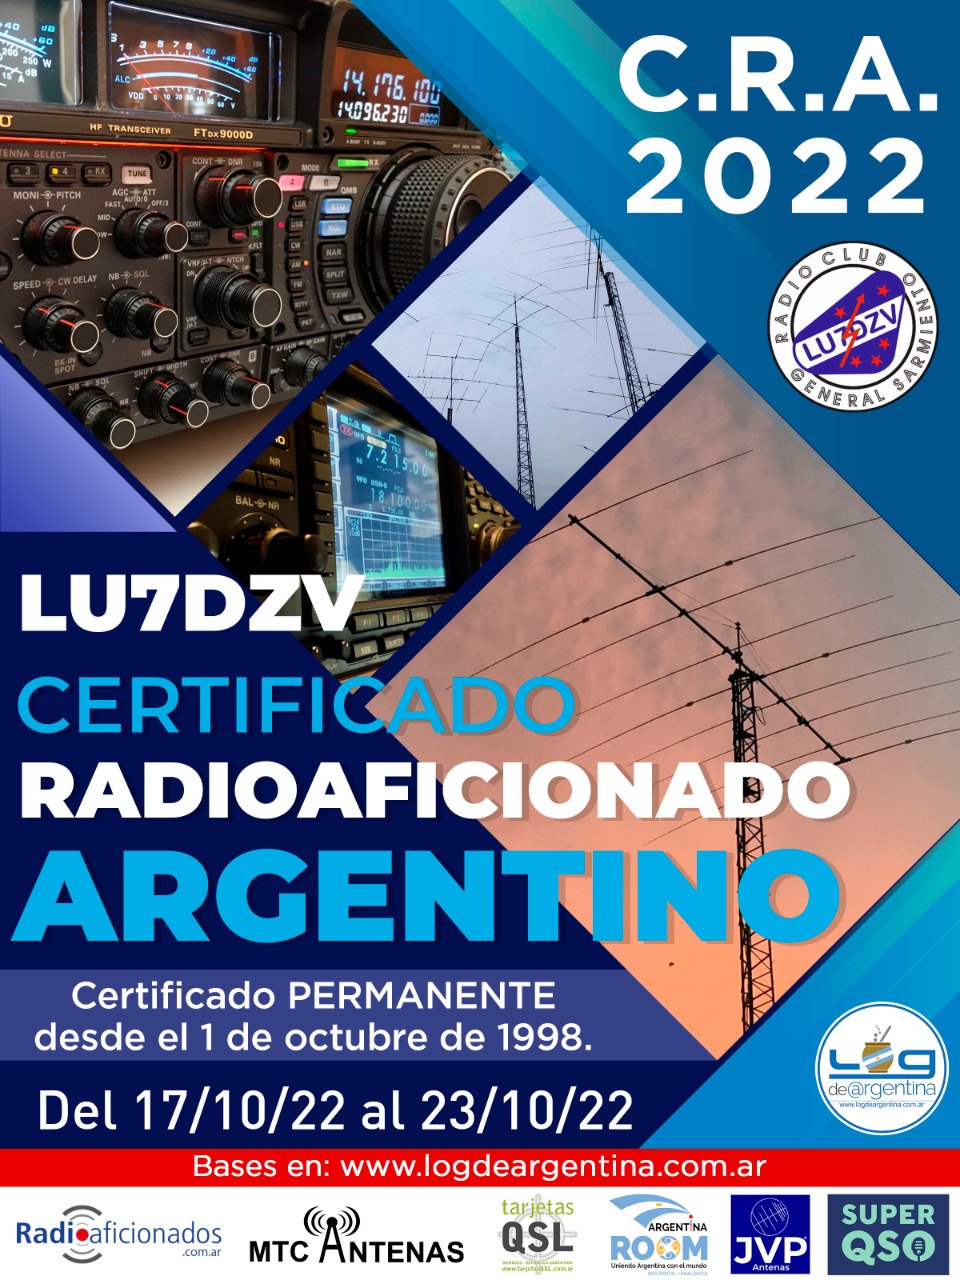 LU7DZV: Certificado Radioaficionado Argentino